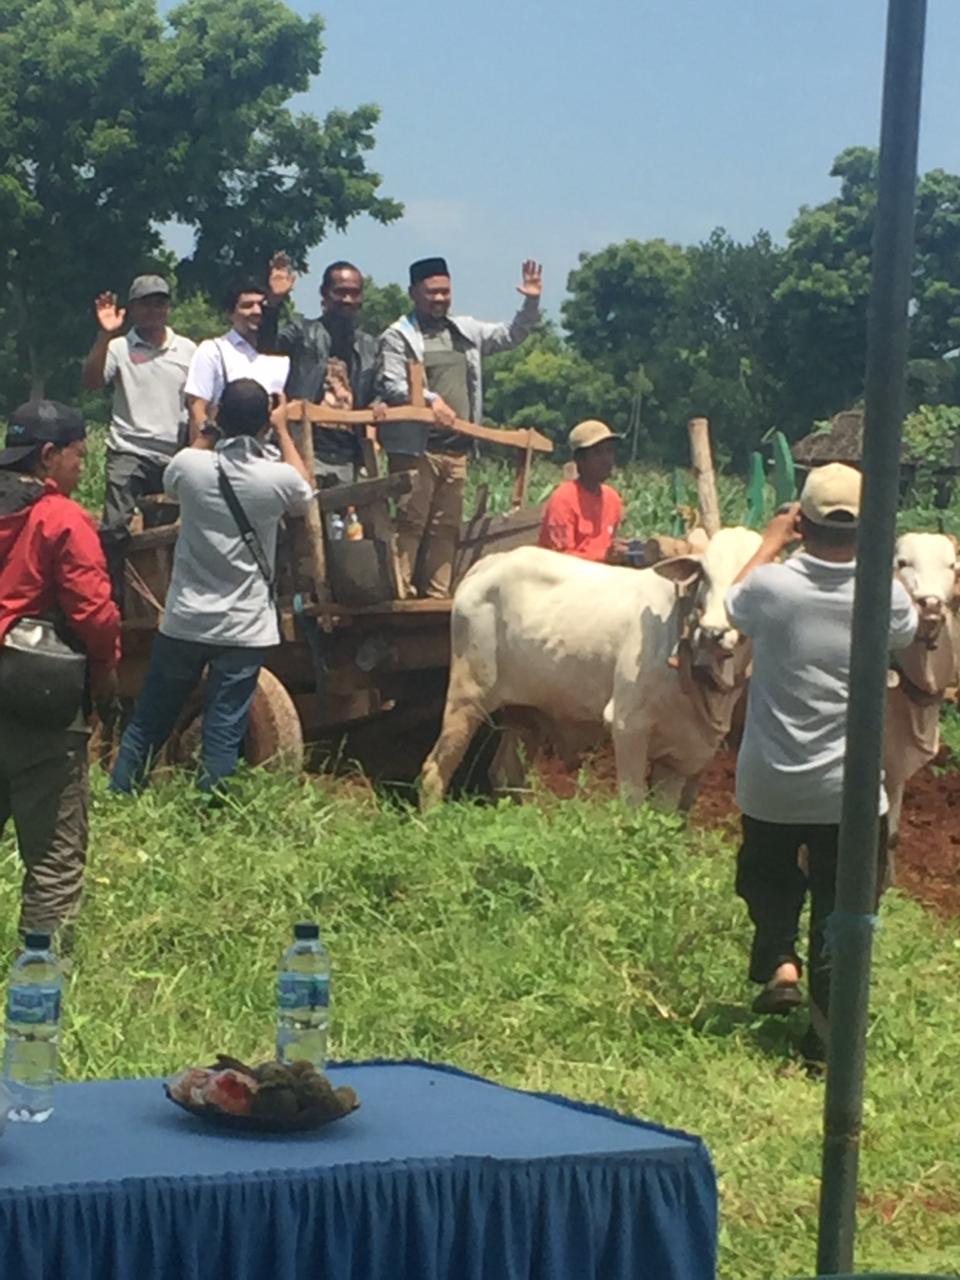 Ketua DPRD Gresik Apresiasi Wisata Setigi dan Kebun Karya Sang Begawan Desa Sekapuk